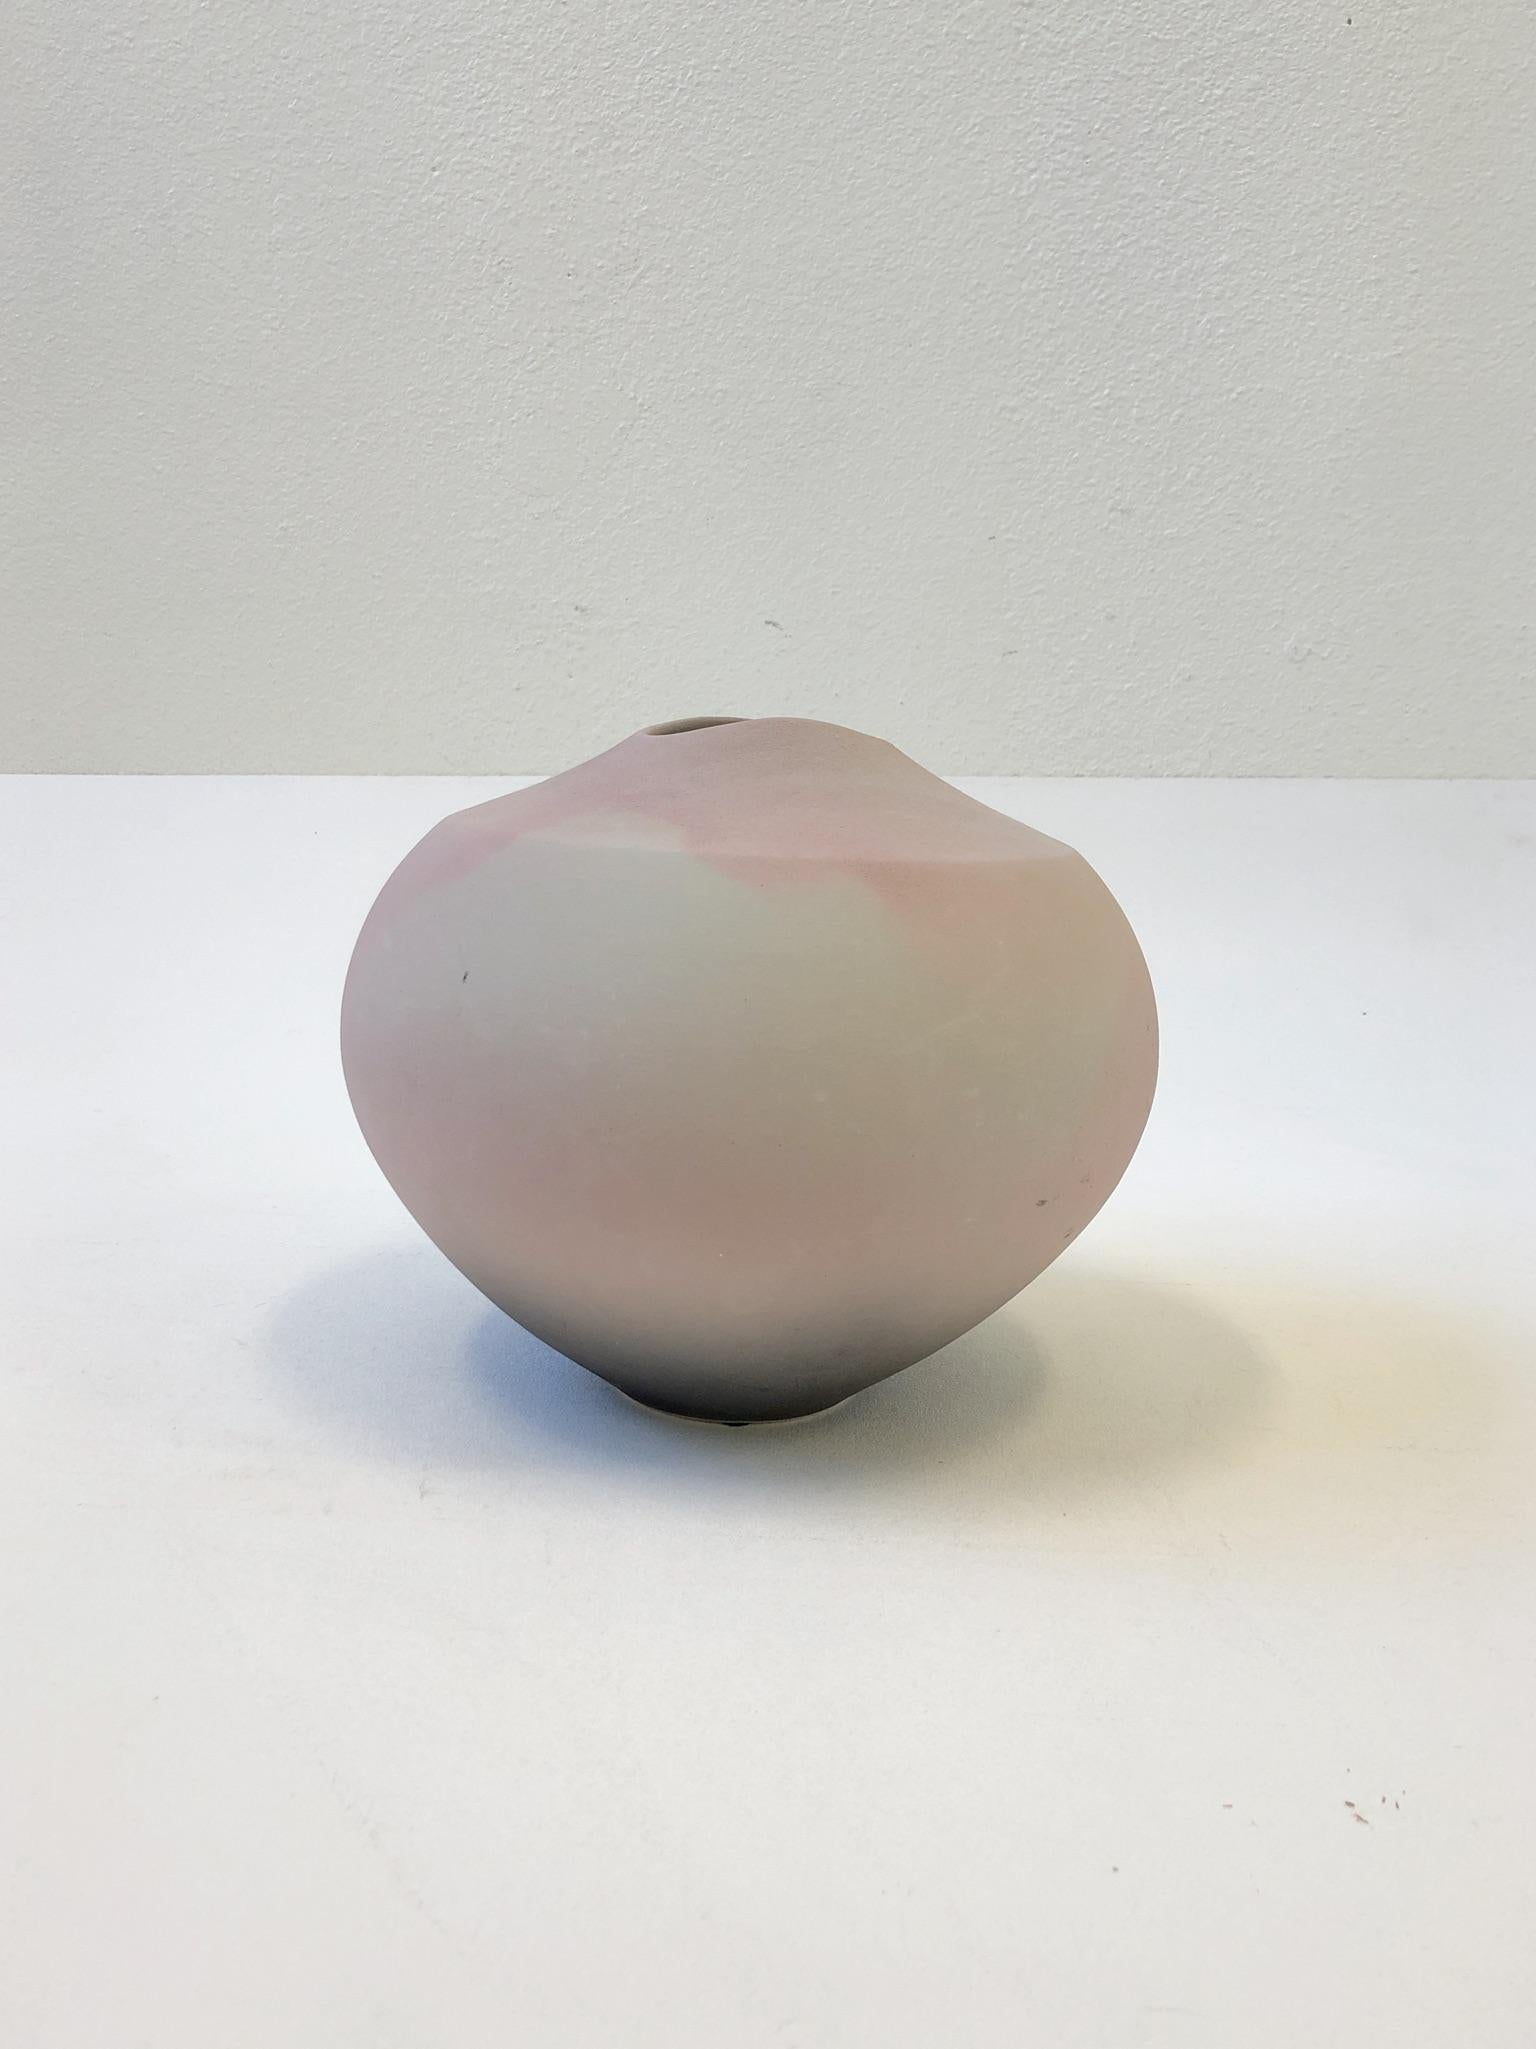 Eine schöne Studio Raku Ovoid rosa Keramik-Vase Design in den 1980er Jahren von Garry Ubben für Steve Chase. Die Vase ist mit Ubben signiert und trägt das Etikett Steve Chase.
Abmessungen: 11